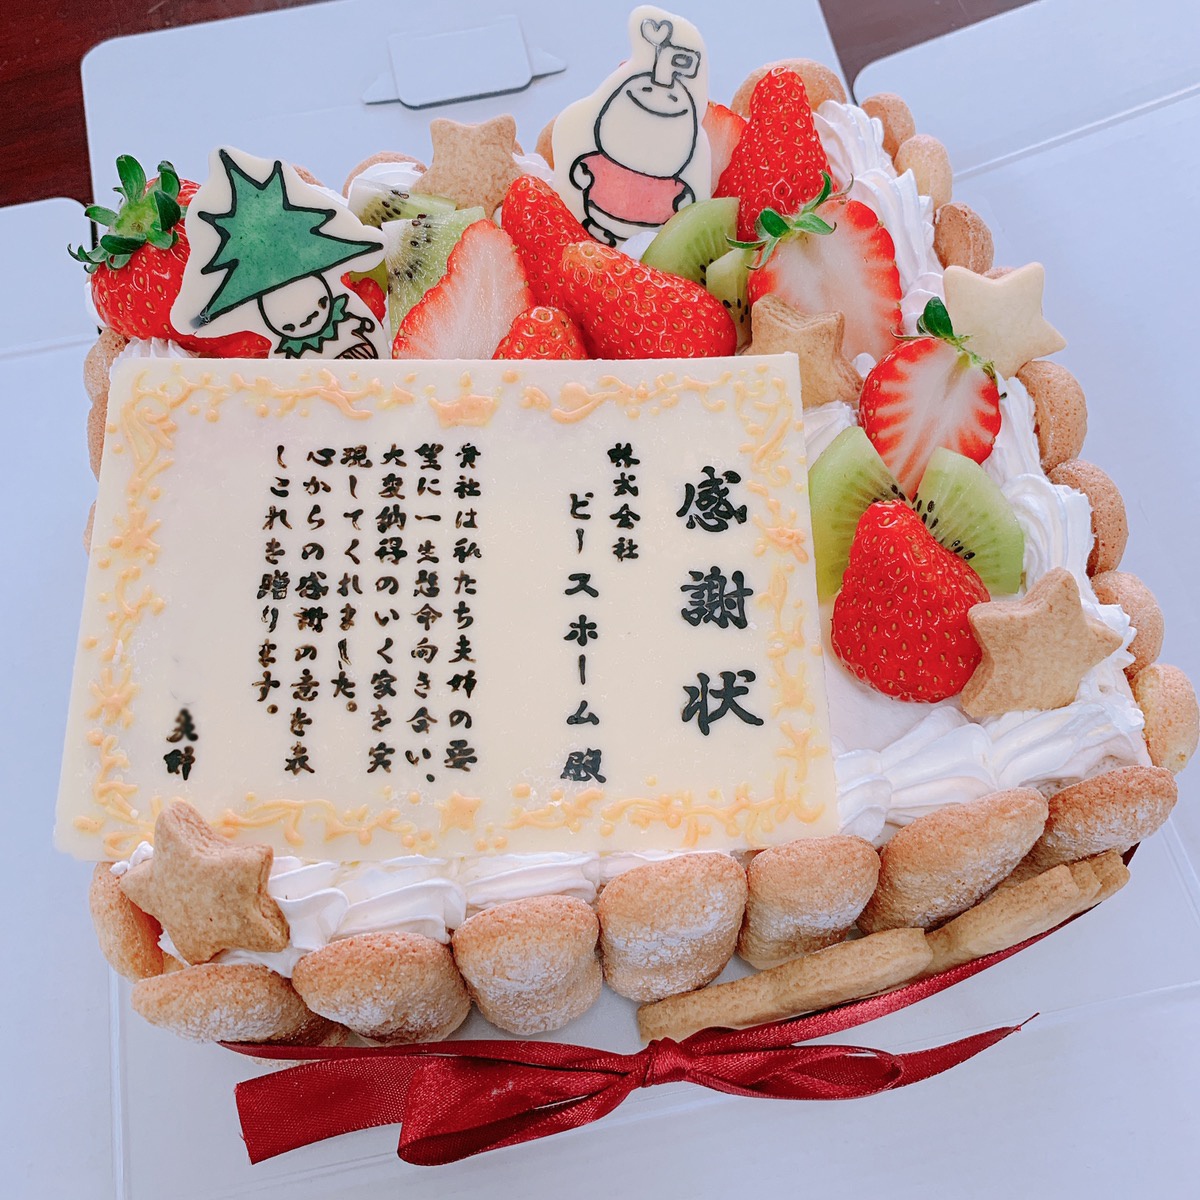 海里 鋼 終了する ケーキ 手作り キャラクター Edamura Jp